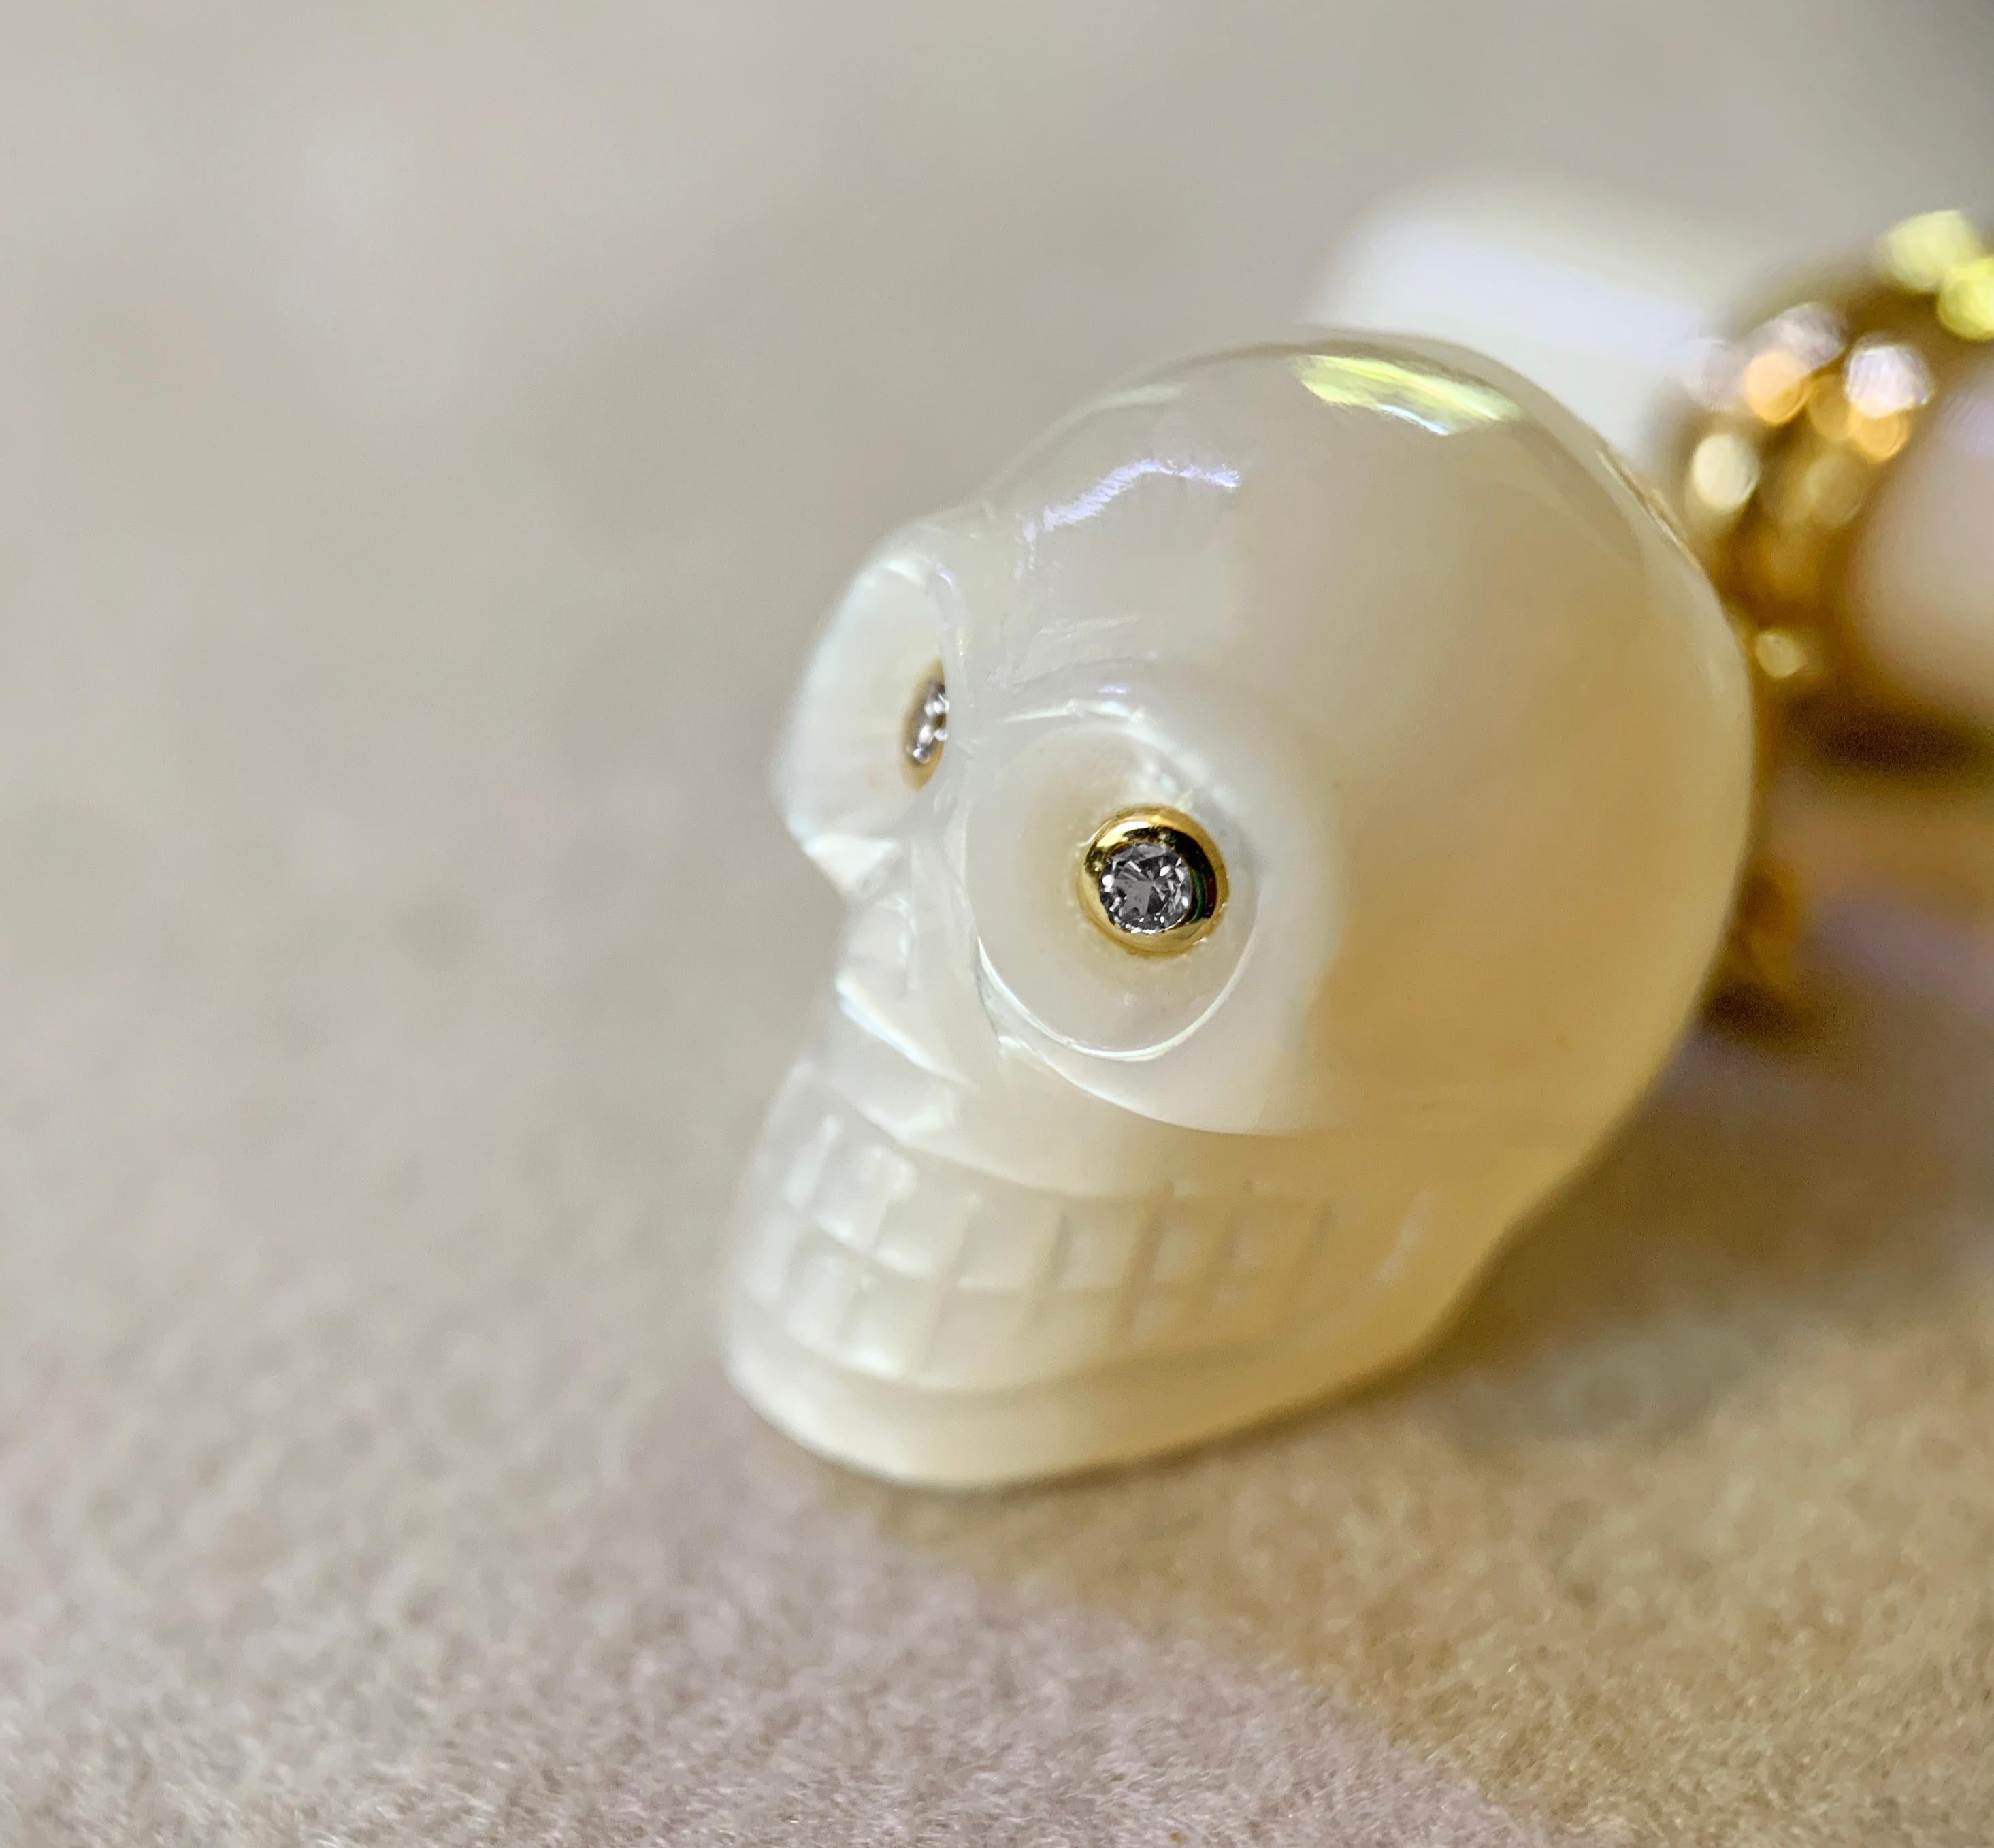 Ces boutons de manchette ludiques sont entièrement réalisés en nacre. La face avant est magistralement sculptée pour représenter un crâne au large sourire et aux orbites enfoncées d'où brillent deux diamants. 
Un poteau en or jaune 18 carats relie